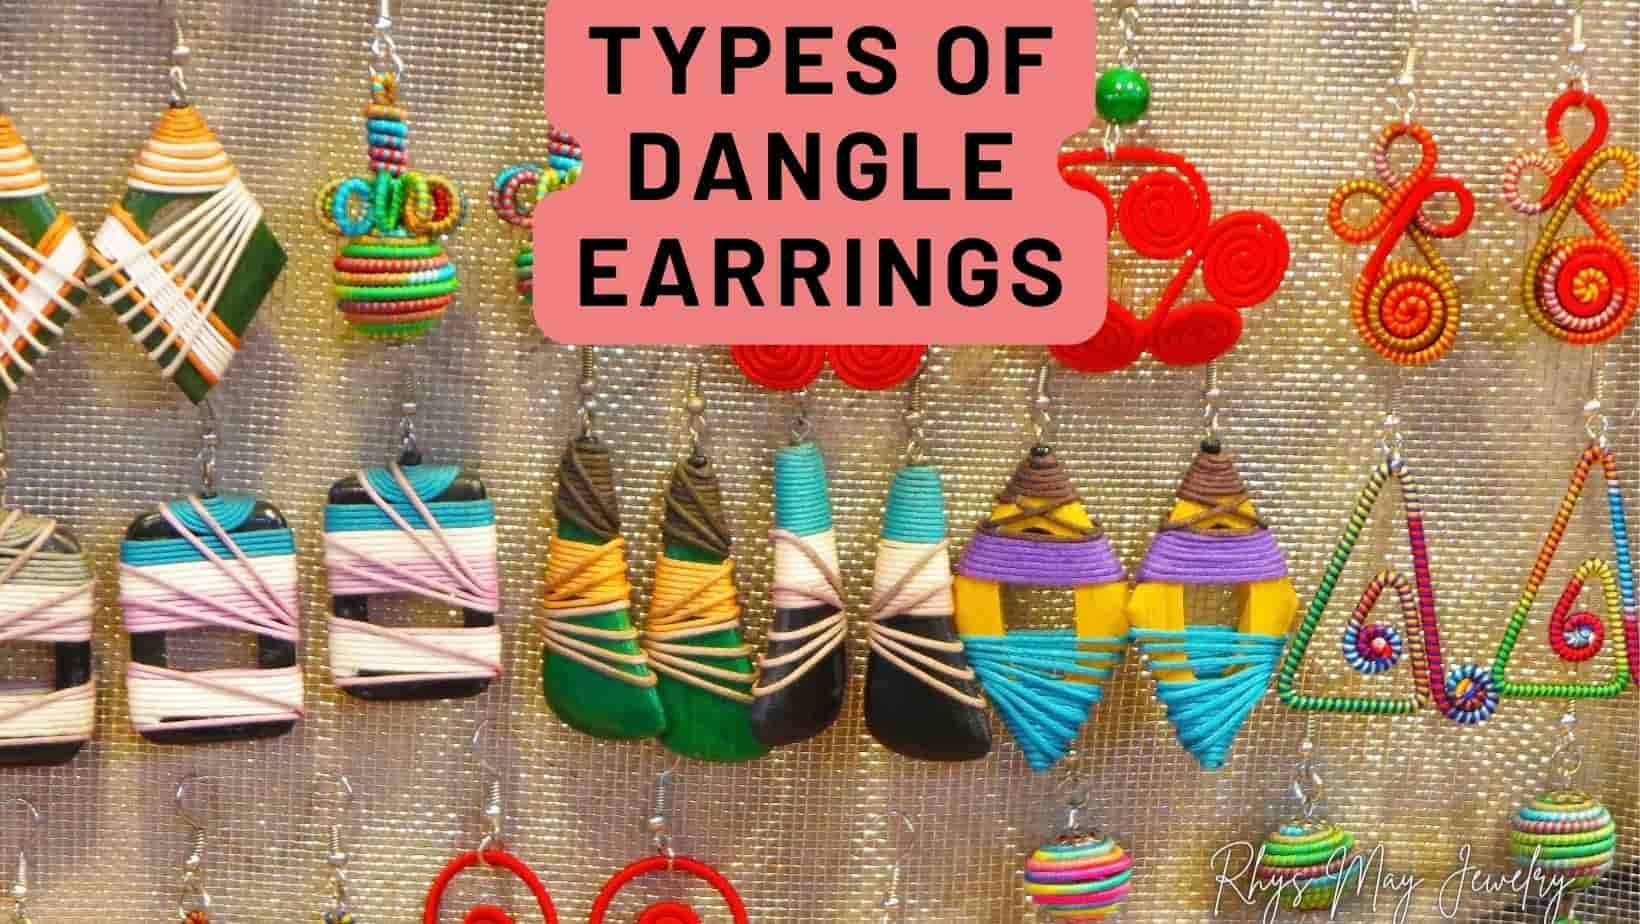 Types of Dangle Earrings